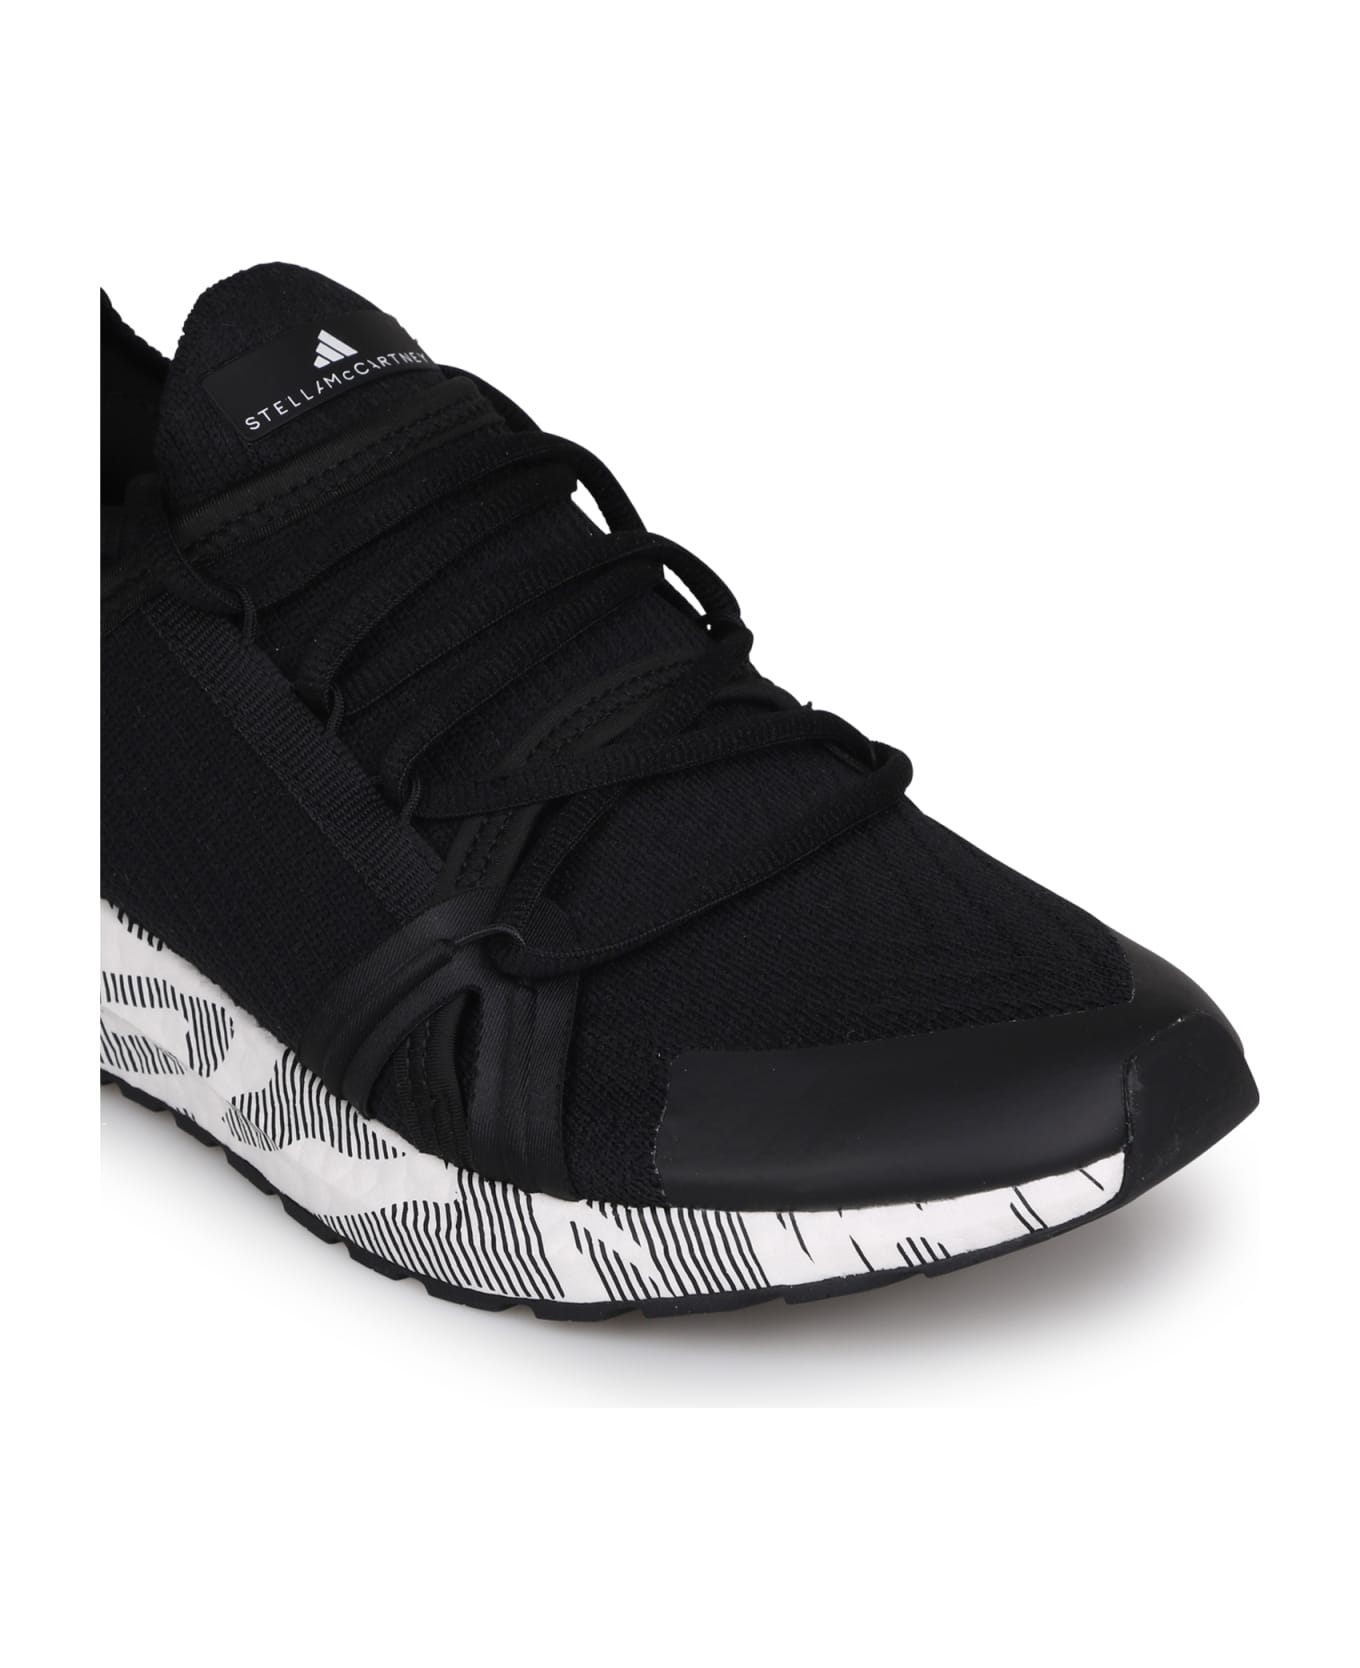 Adidas by Stella McCartney Ultraboost 20 Low-top Sneakers - Cblack/ftwwht/cblack